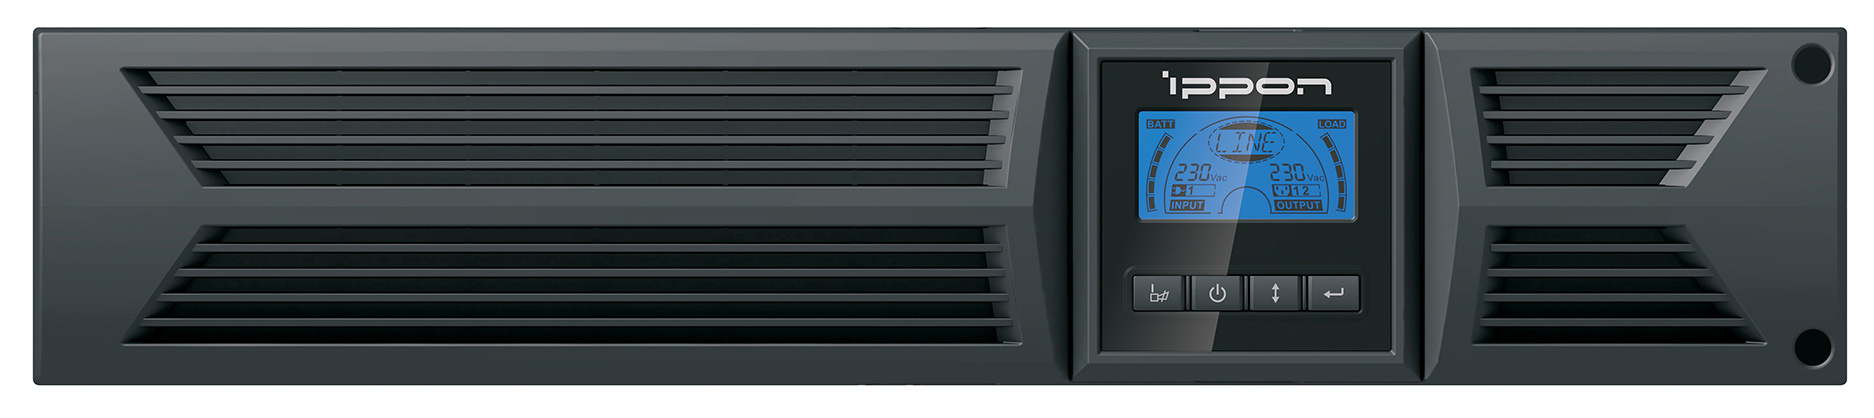 ИБП Ippon Innova RT 1500 Euro, 1500 В·А, 1.35 кВт, EURO, розеток - 4, USB, черный (1549935)